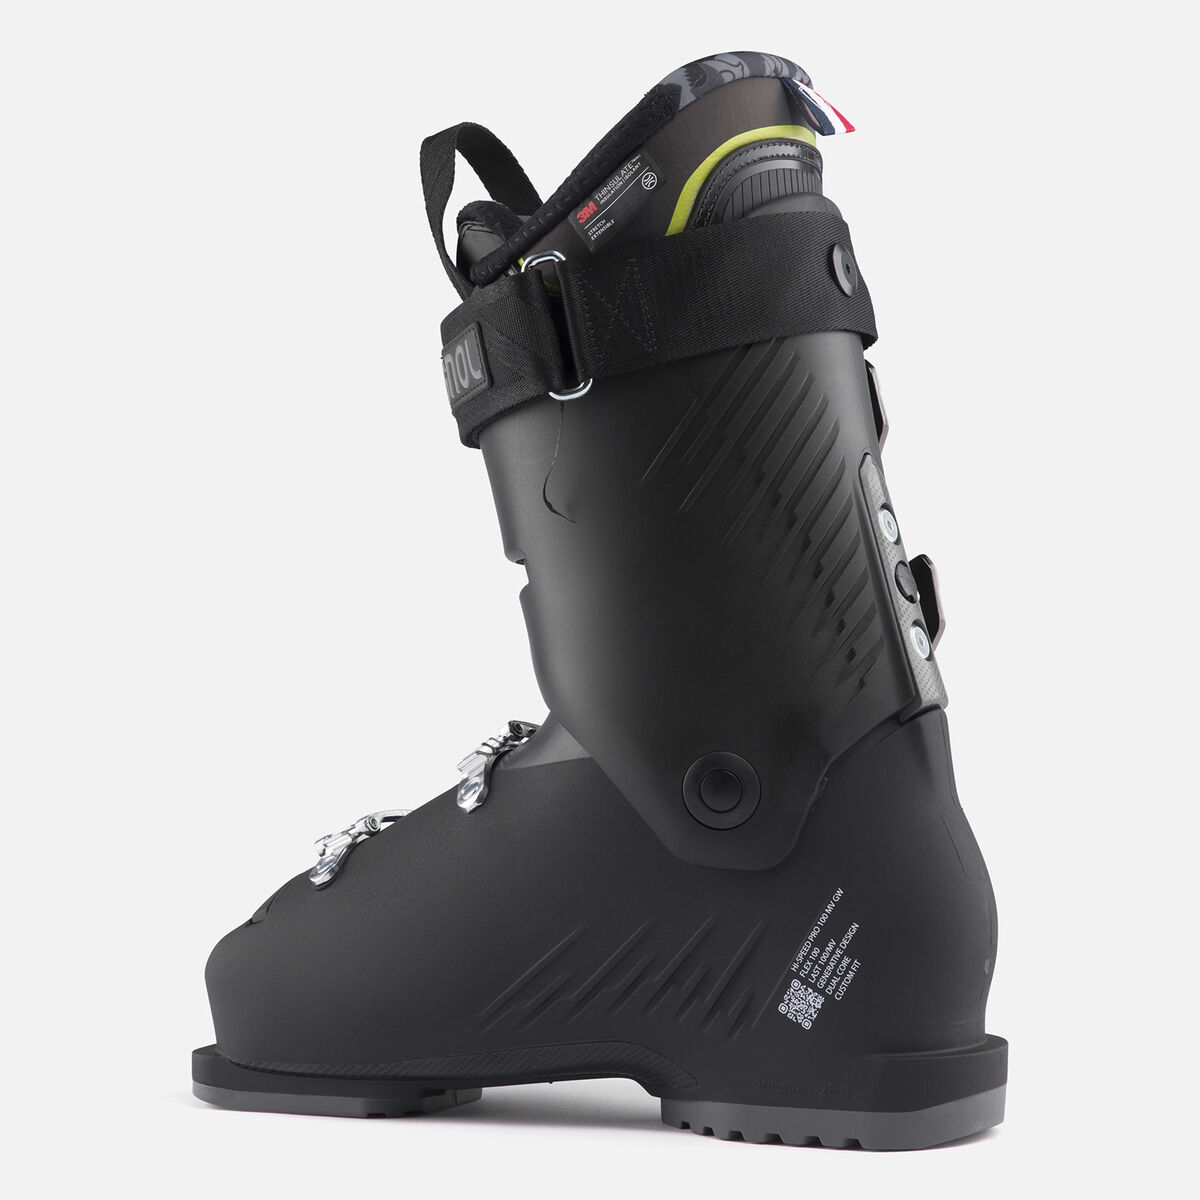 Chaussures de ski de Piste homme HI-Speed Pro 100 MV